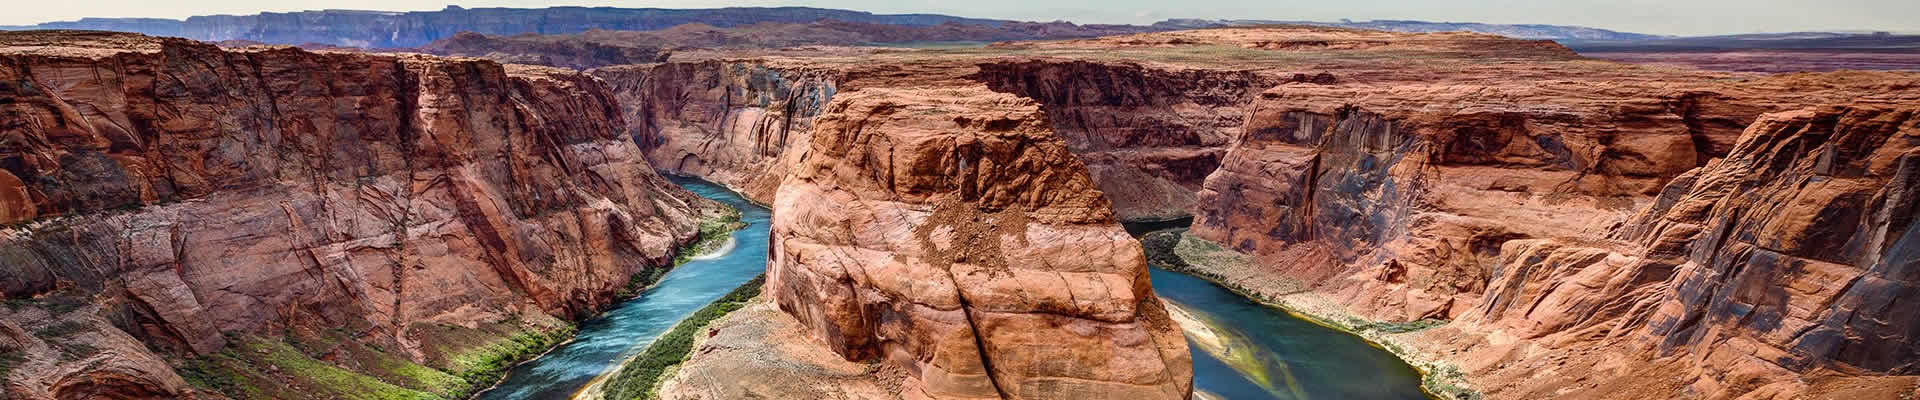 Vuelo en avión de aventura en el Grand Canyon Horseshoe Bend y Lake Powell